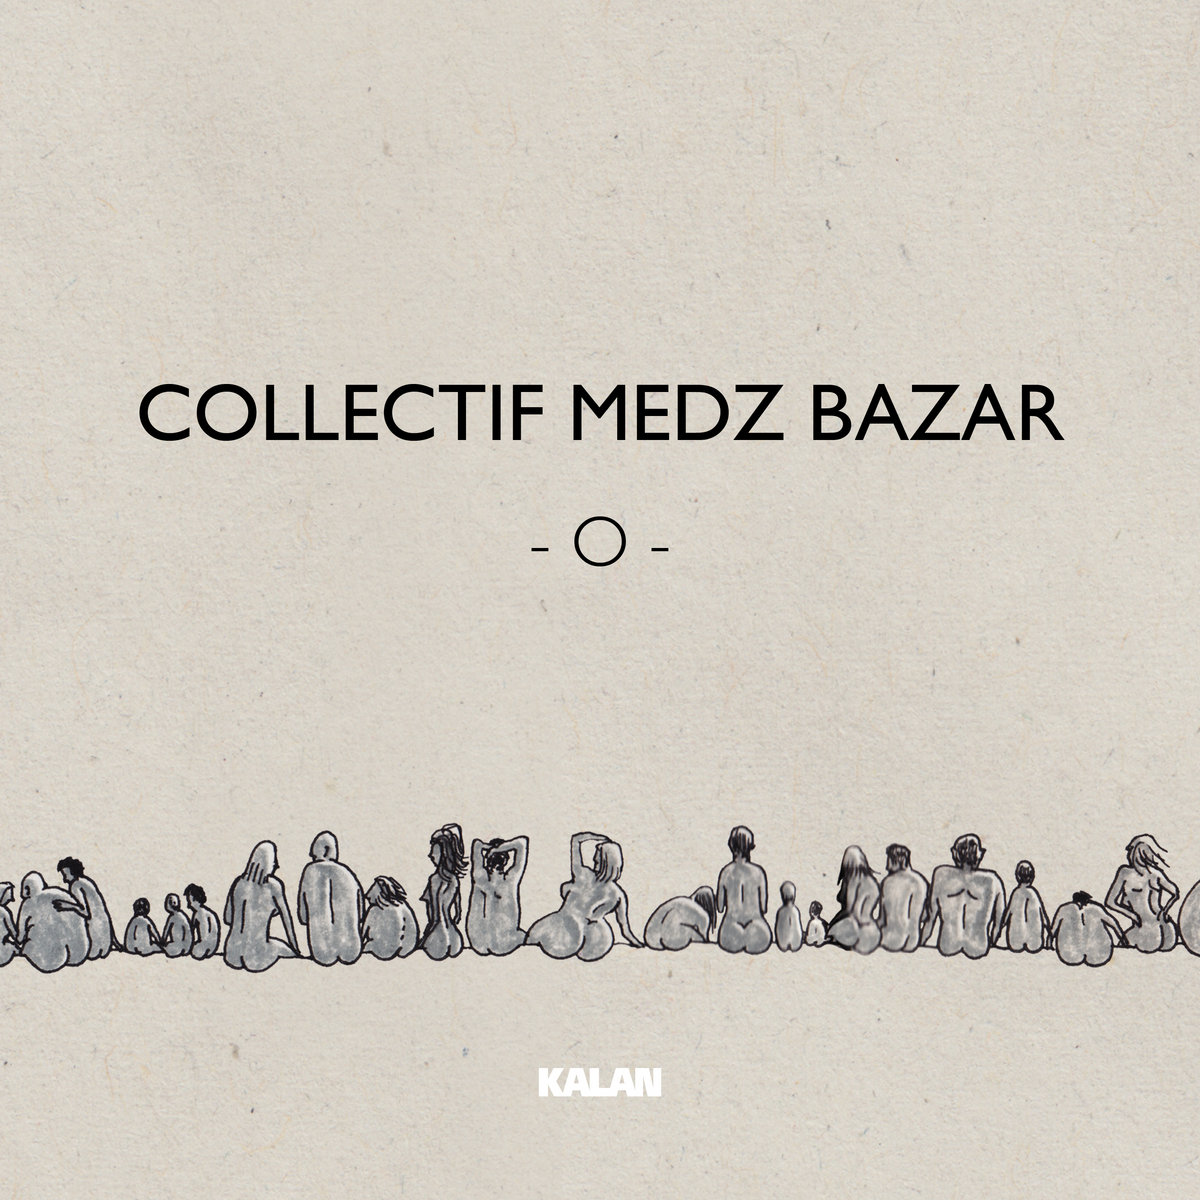 Collectif Medz Bazar O